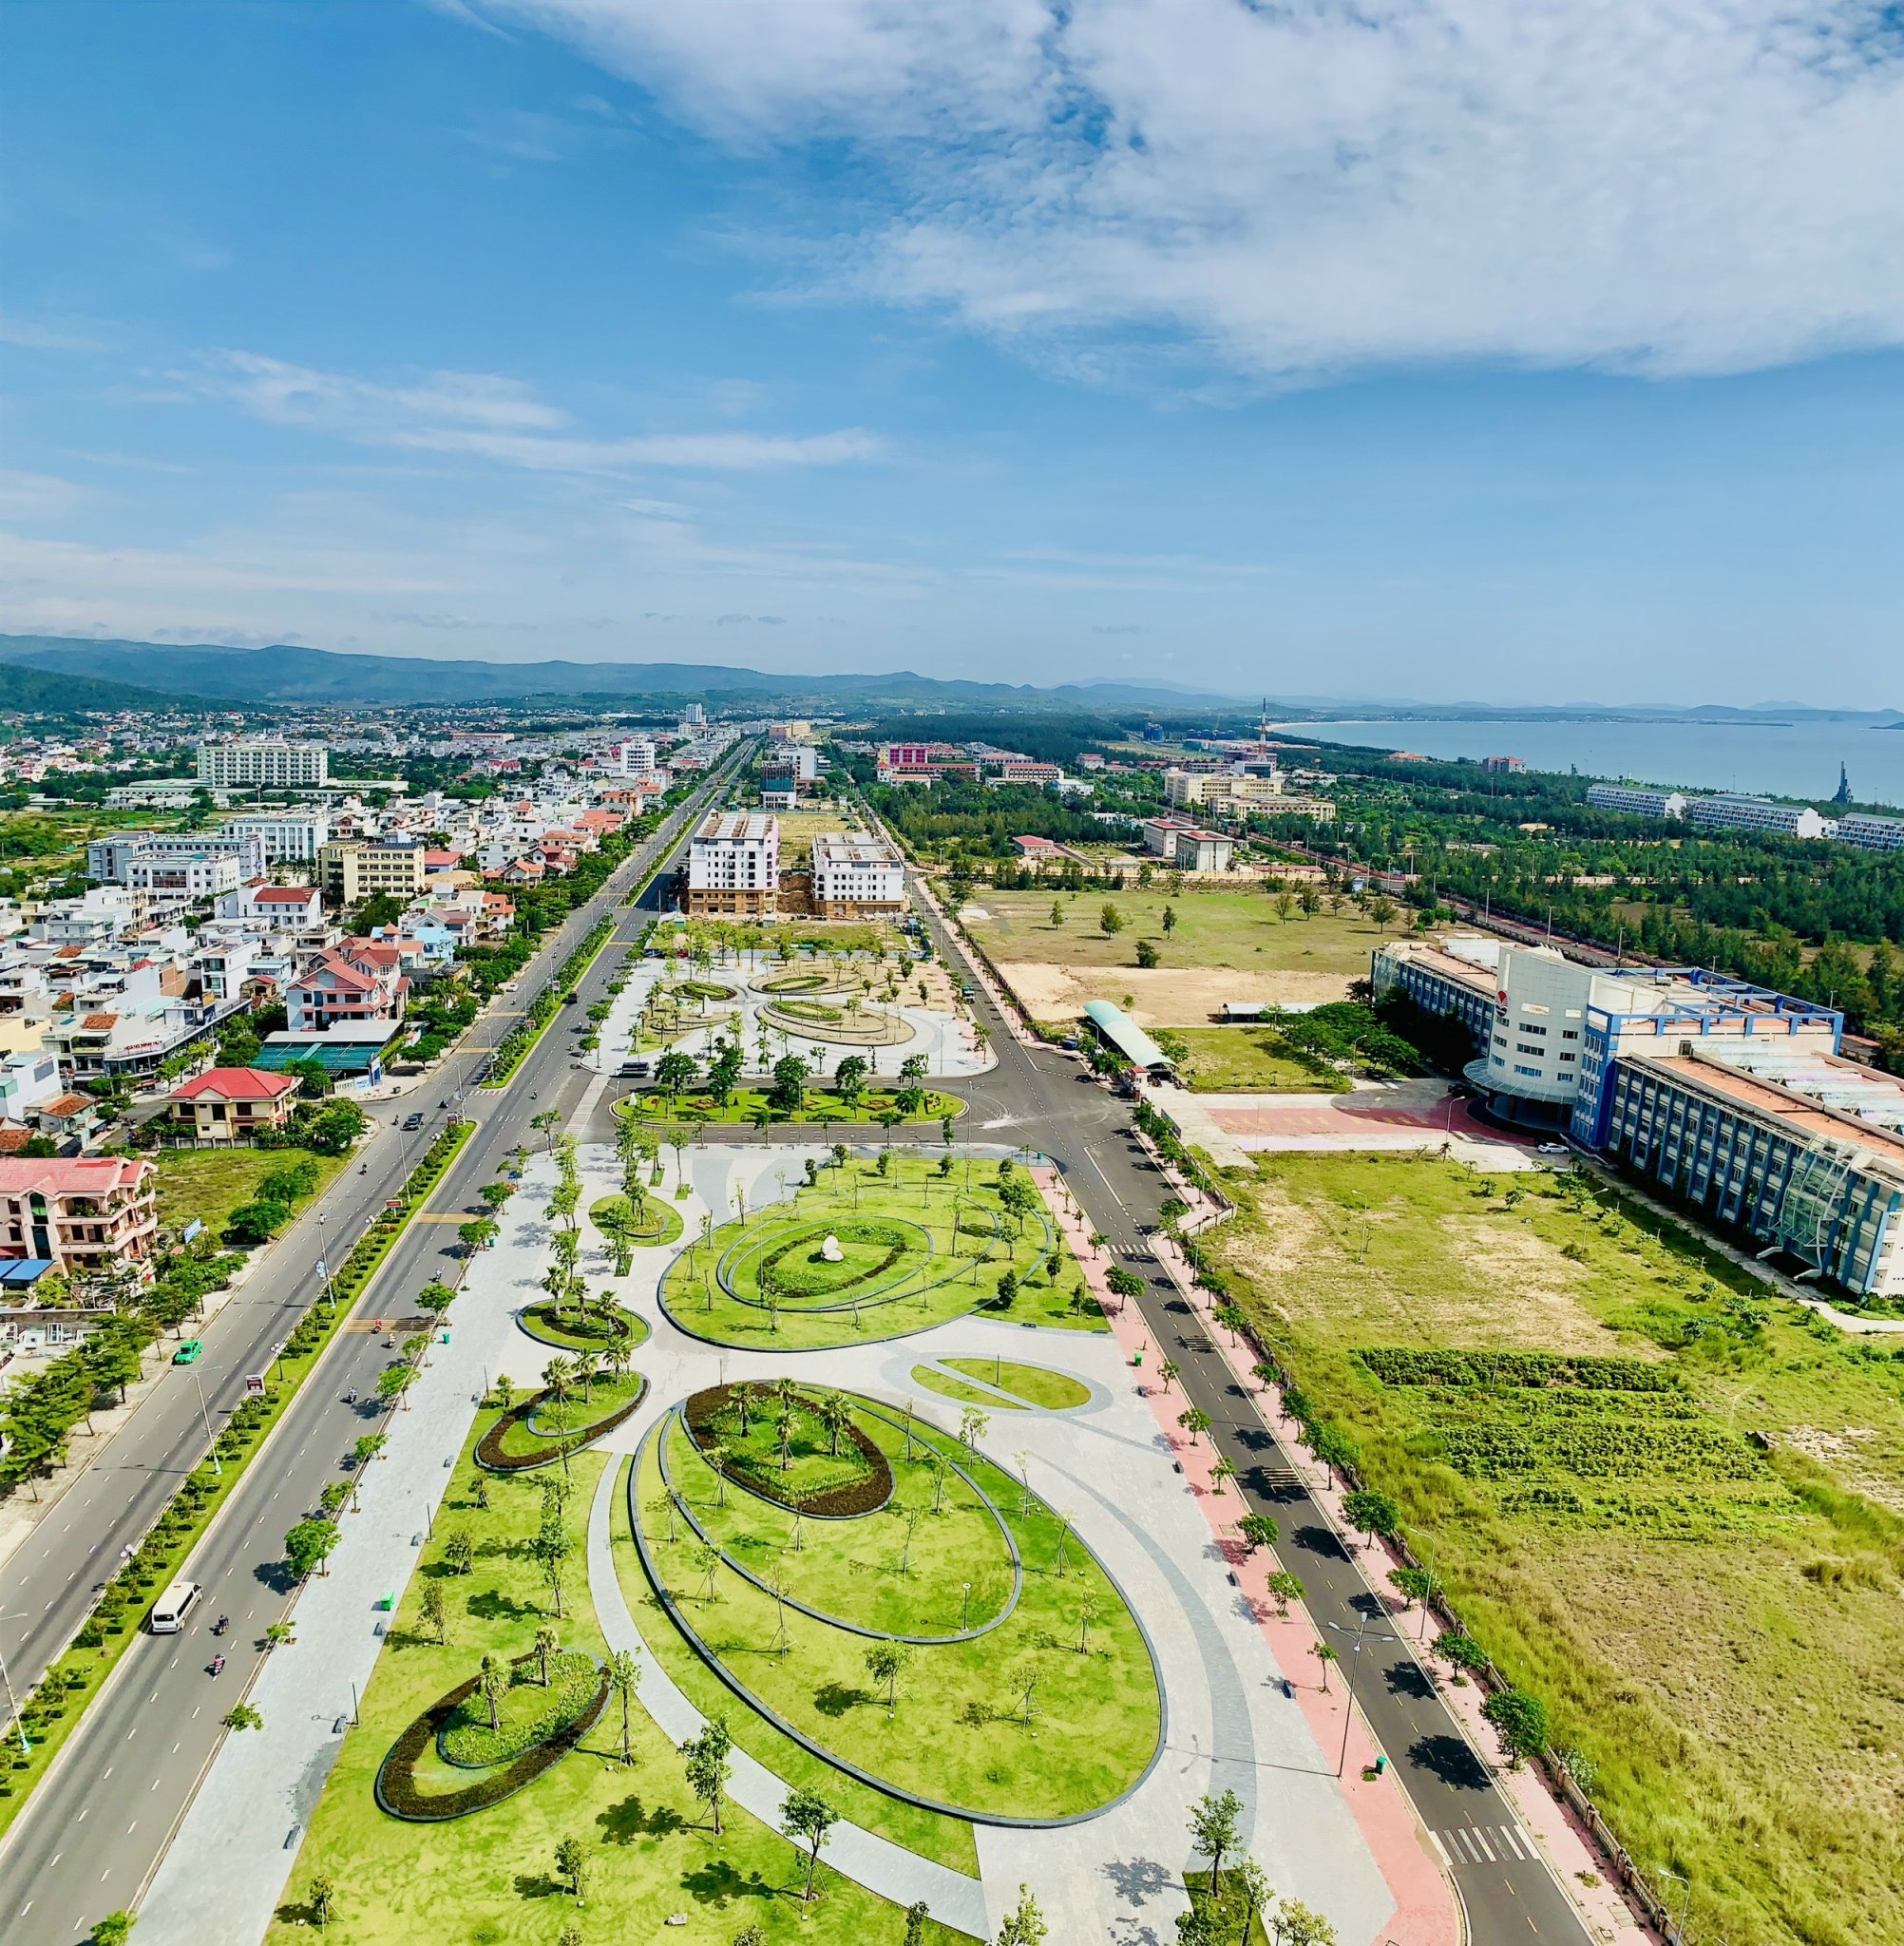 Bán đất chính chủ gần sân bay Tuy Hòa - Khu kinh tế mới Nam Phú Yên